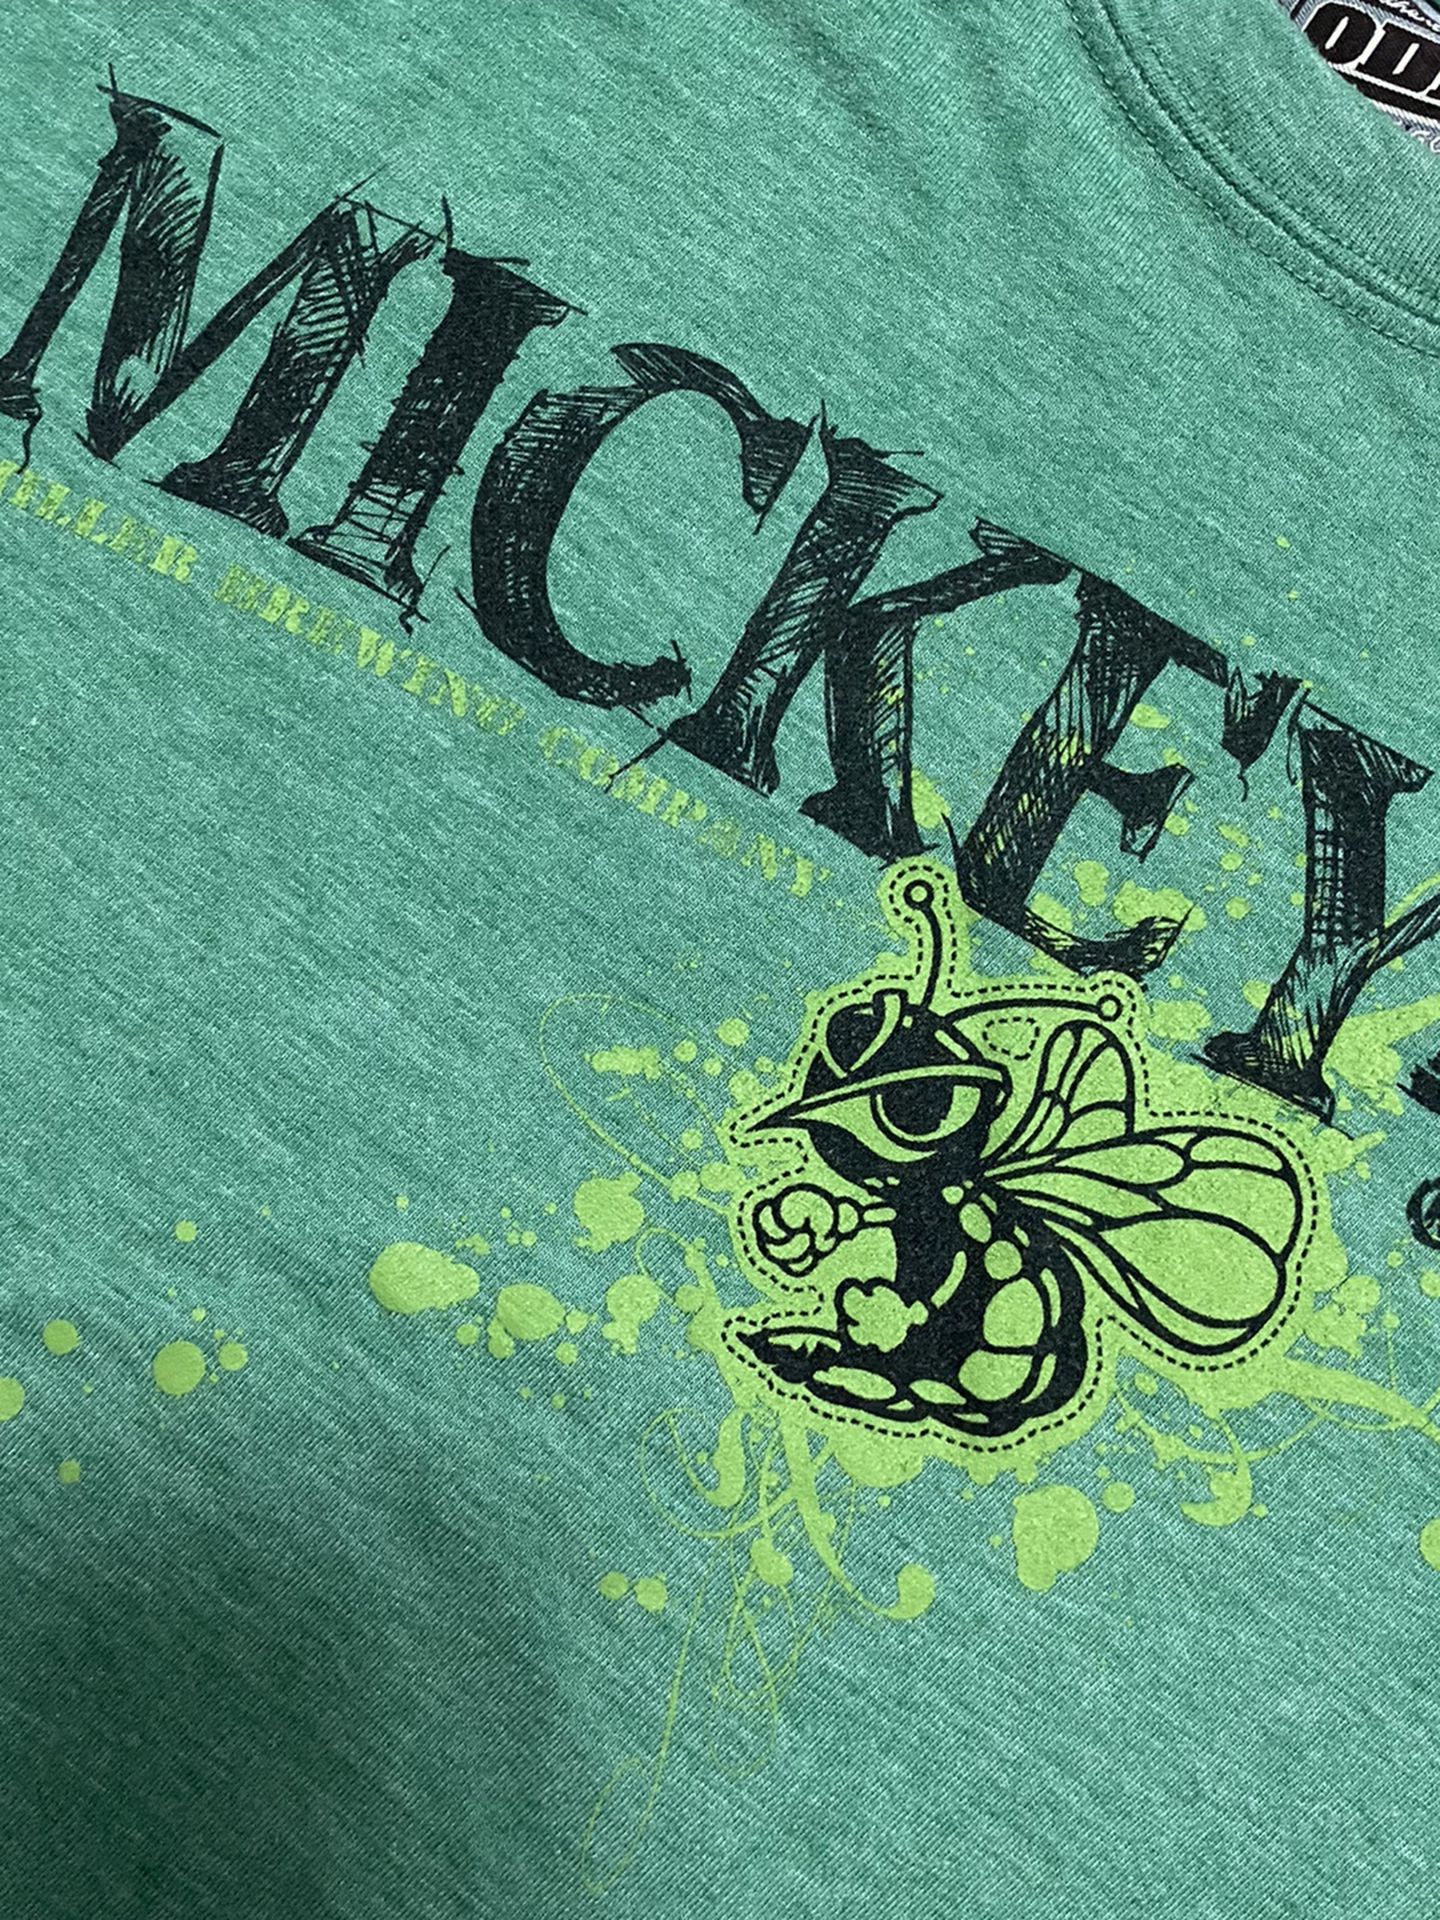 Vintage Mickeys Malt Bee Beer Tee Shirt 80’s 90’s Coors Med Large Miller